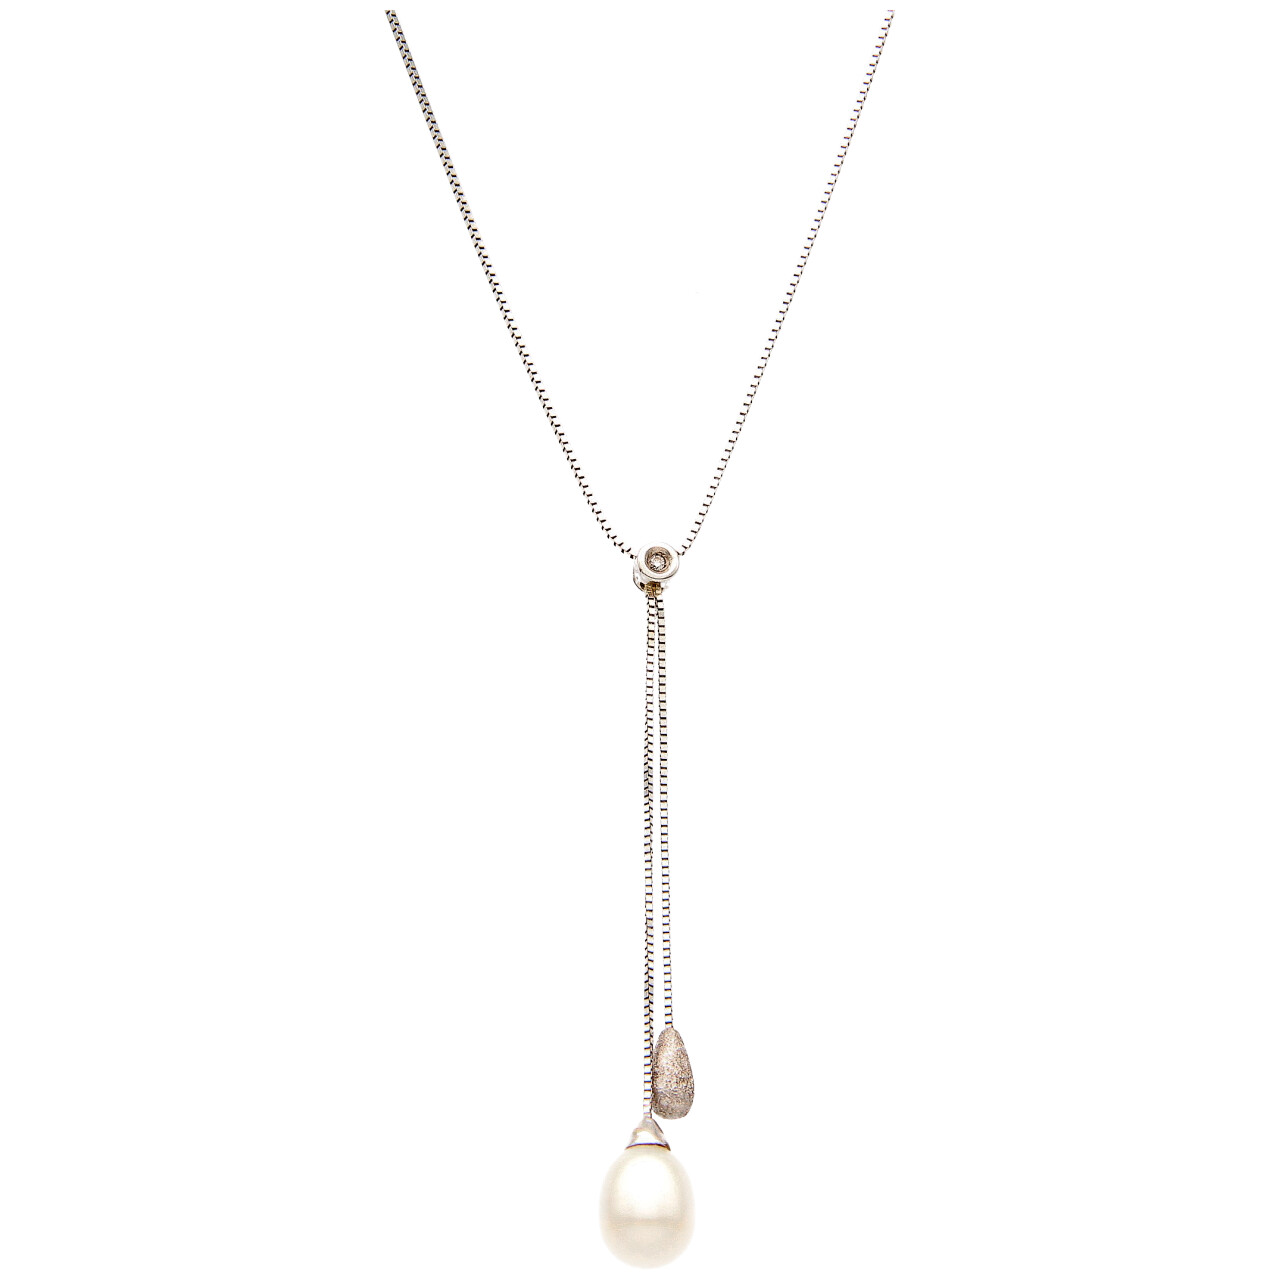 Cadena de oro blanco con perla y diamante 0,01 ct.